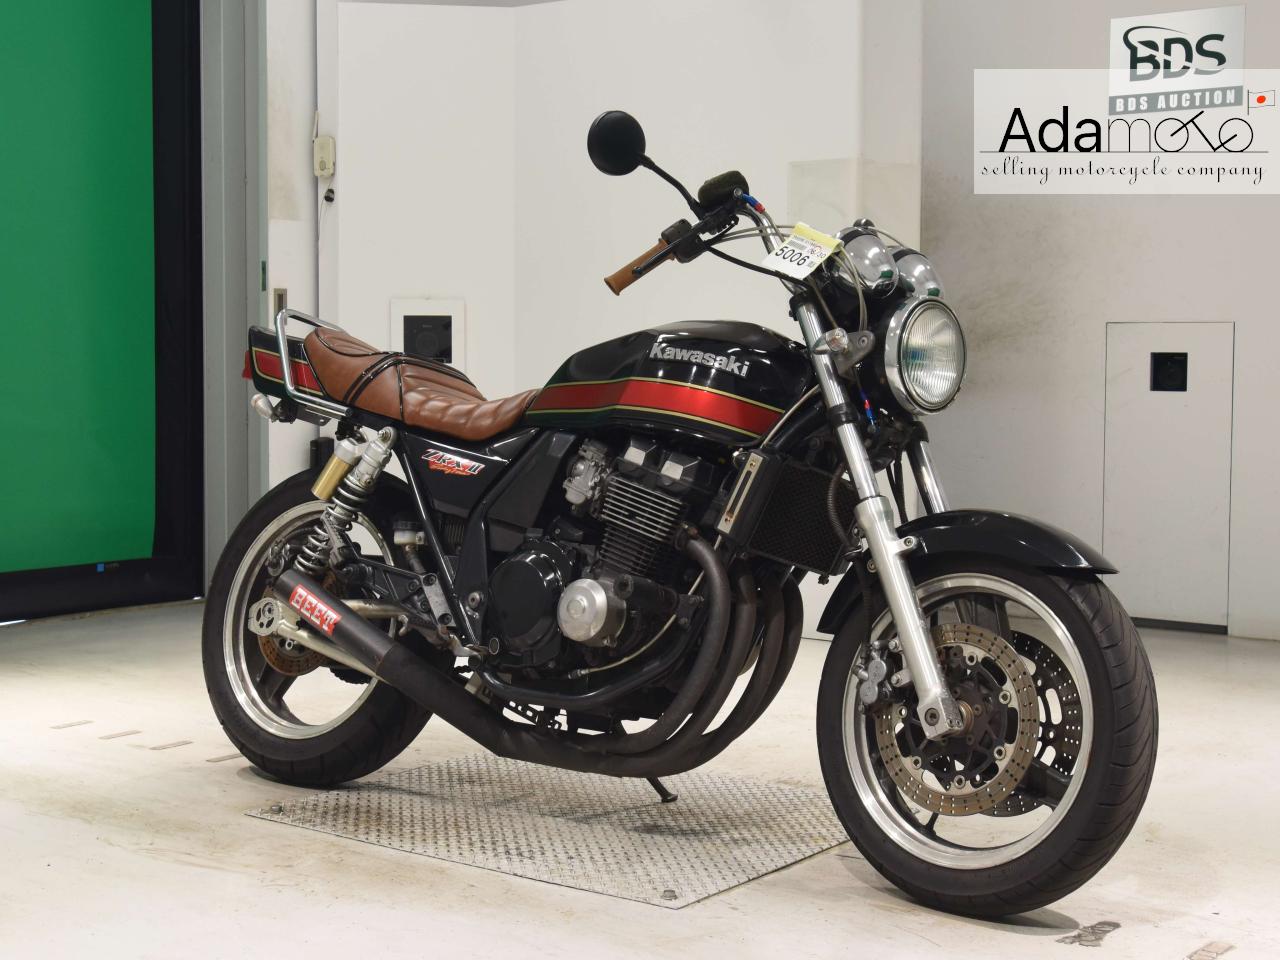 Kawasaki ZRX 2 - Adamoto - Motorcycles from Japan